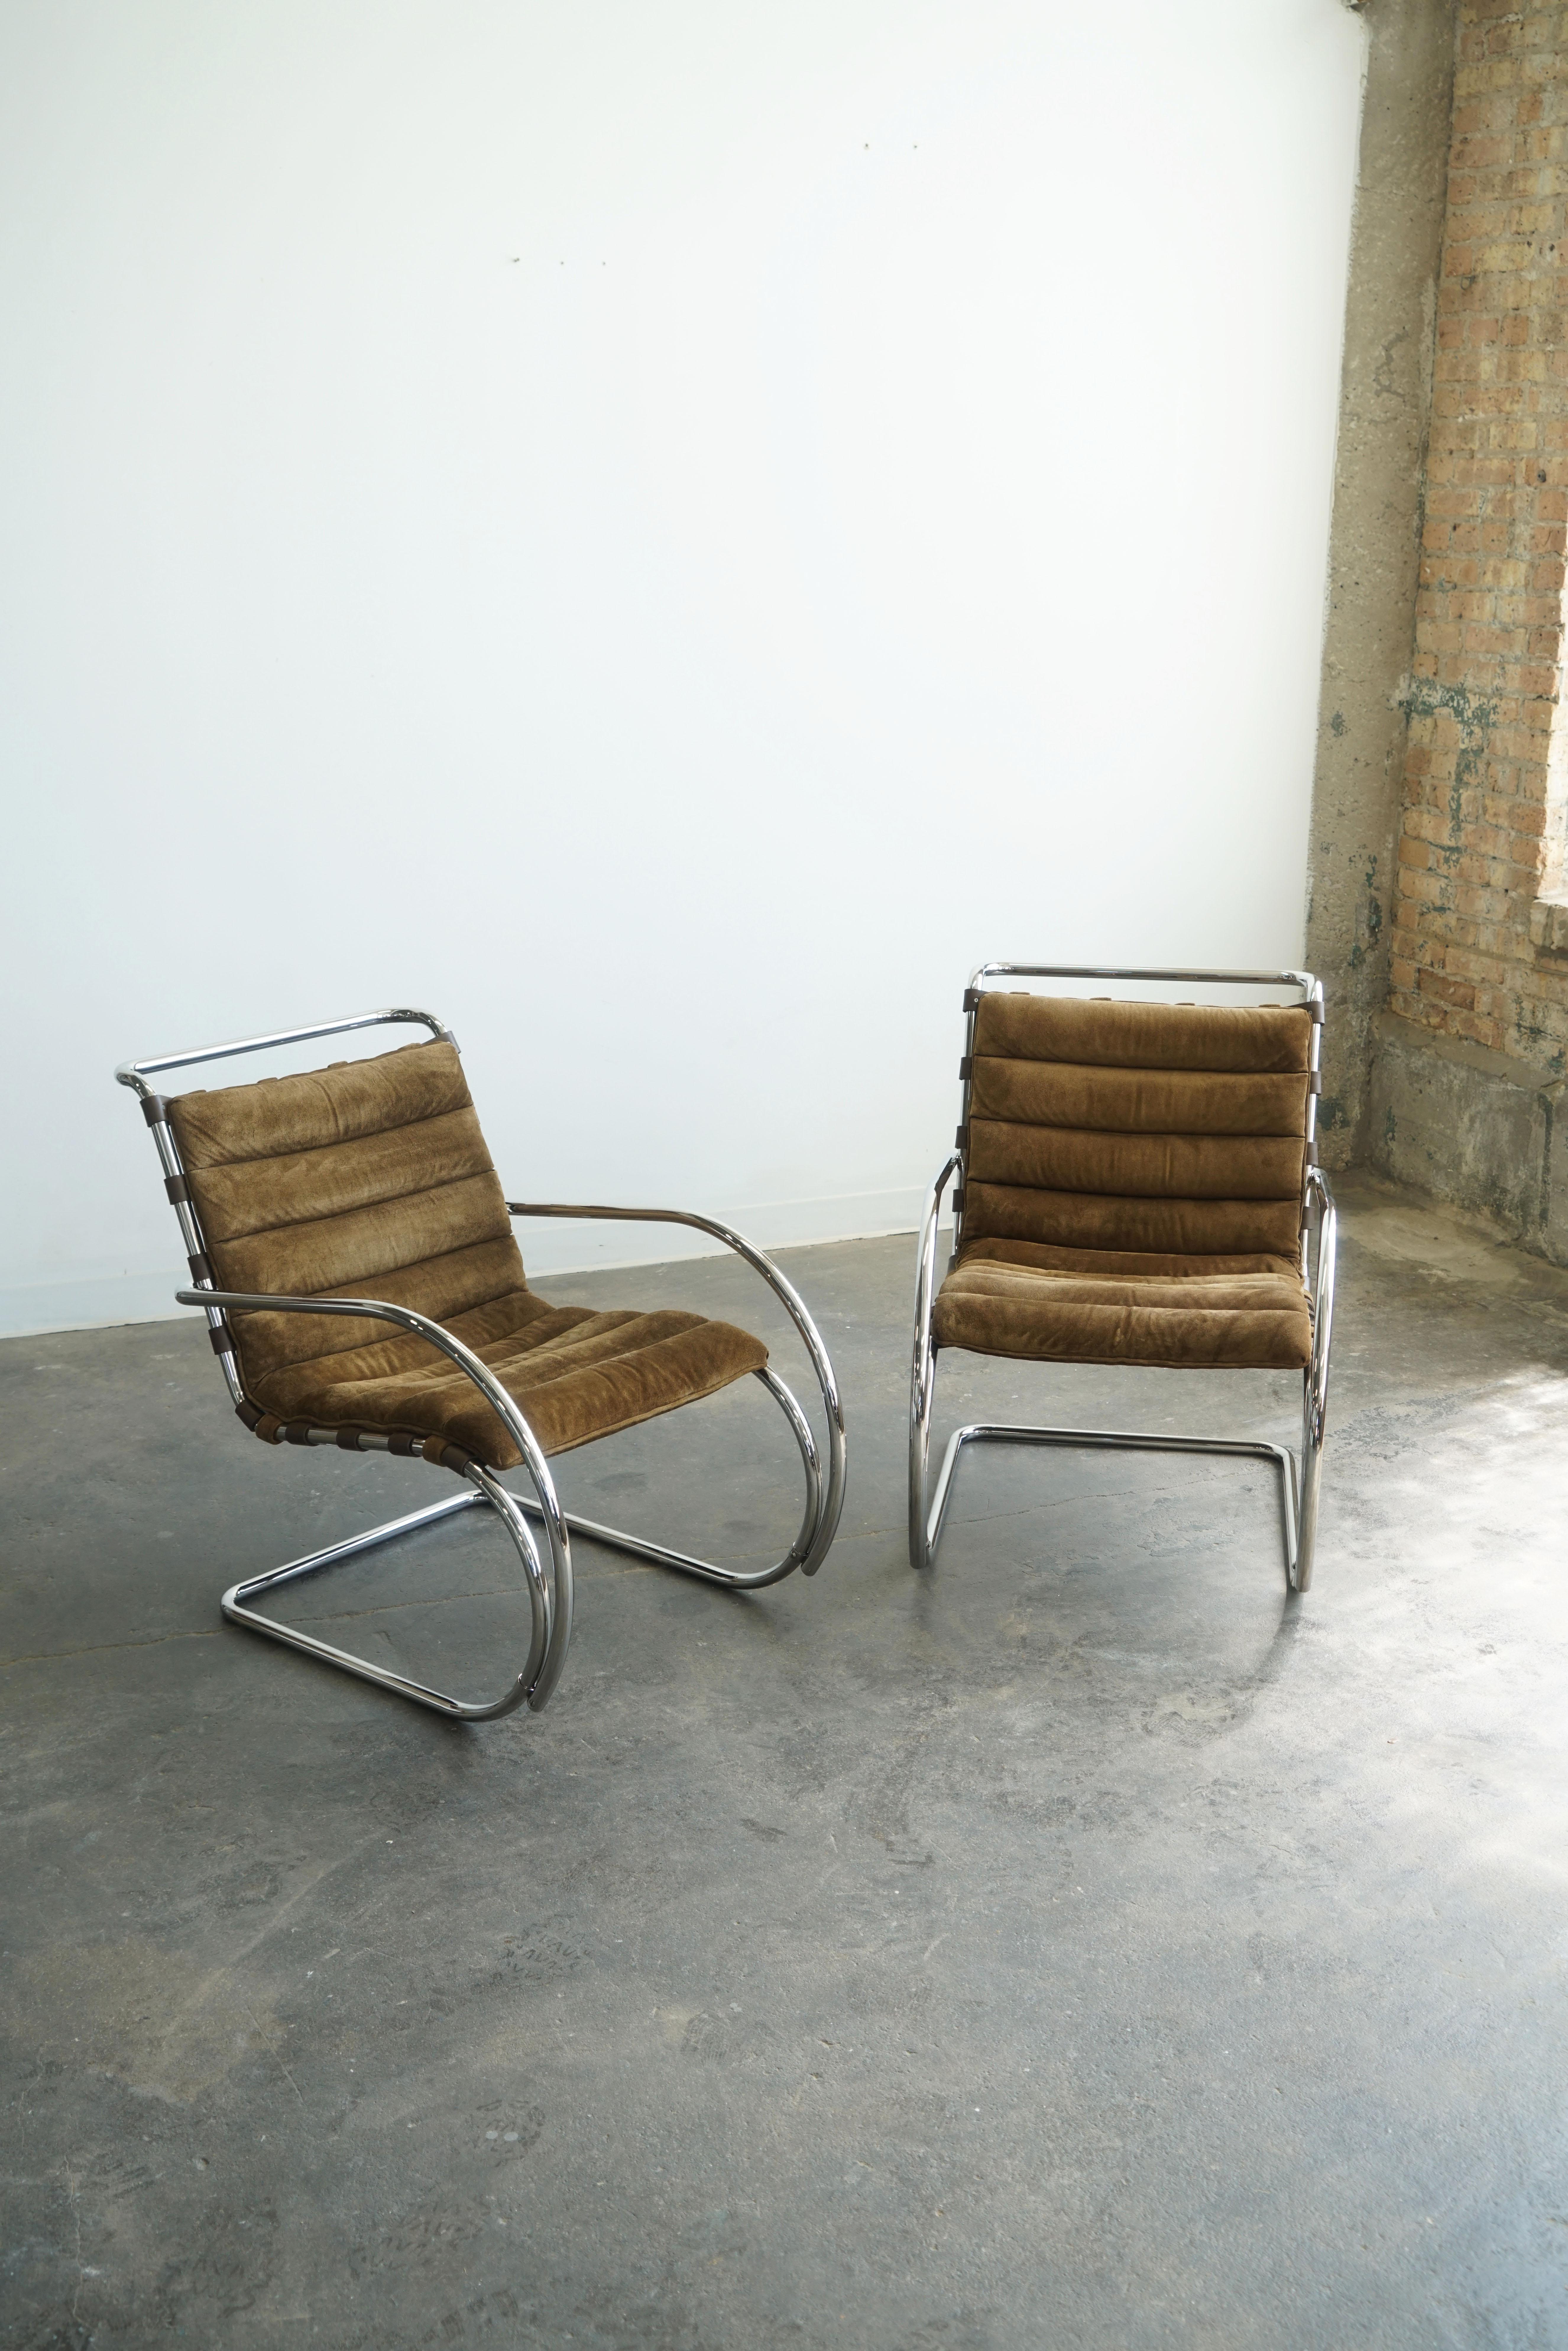 Paire de chaises longues avec accoudoirs conçues par Mies Van Der Rohe pour Knoll.
Coussin d'assise en daim marron / cadre en acier tubulaire chromé
Sangles en cuir 
Étiquettes du fabricant Knoll datant de : Nov 1982
Conçu à l'origine en 1927.

Le